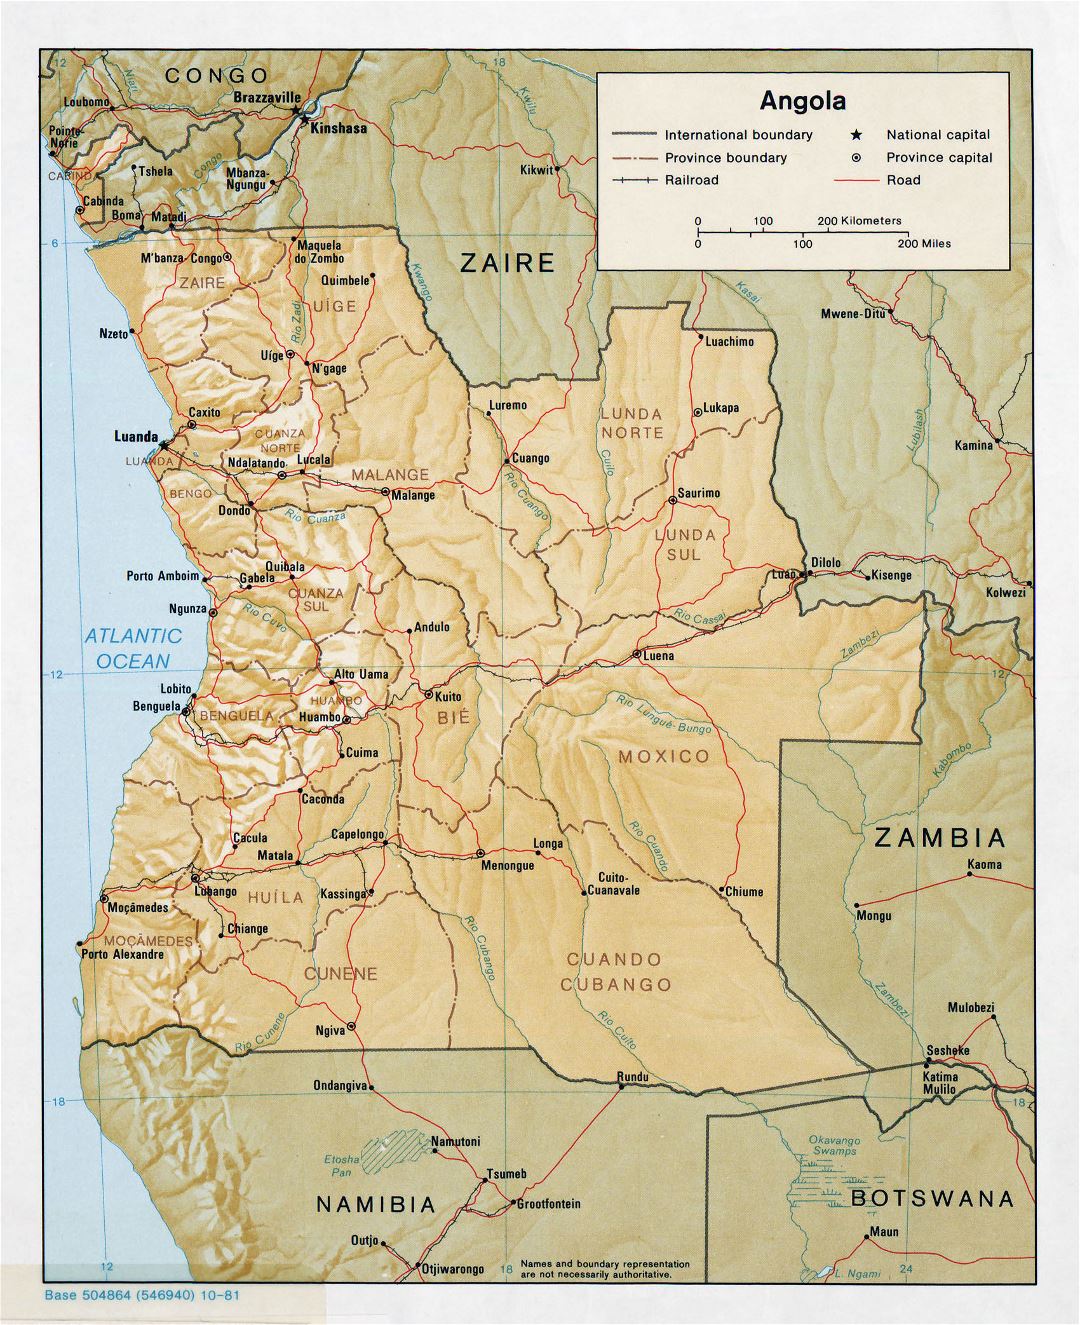 Grande detallado mapa político y administrativo de Angola con socorro, carreteras, ferrocarriles y principales ciudades - 1981